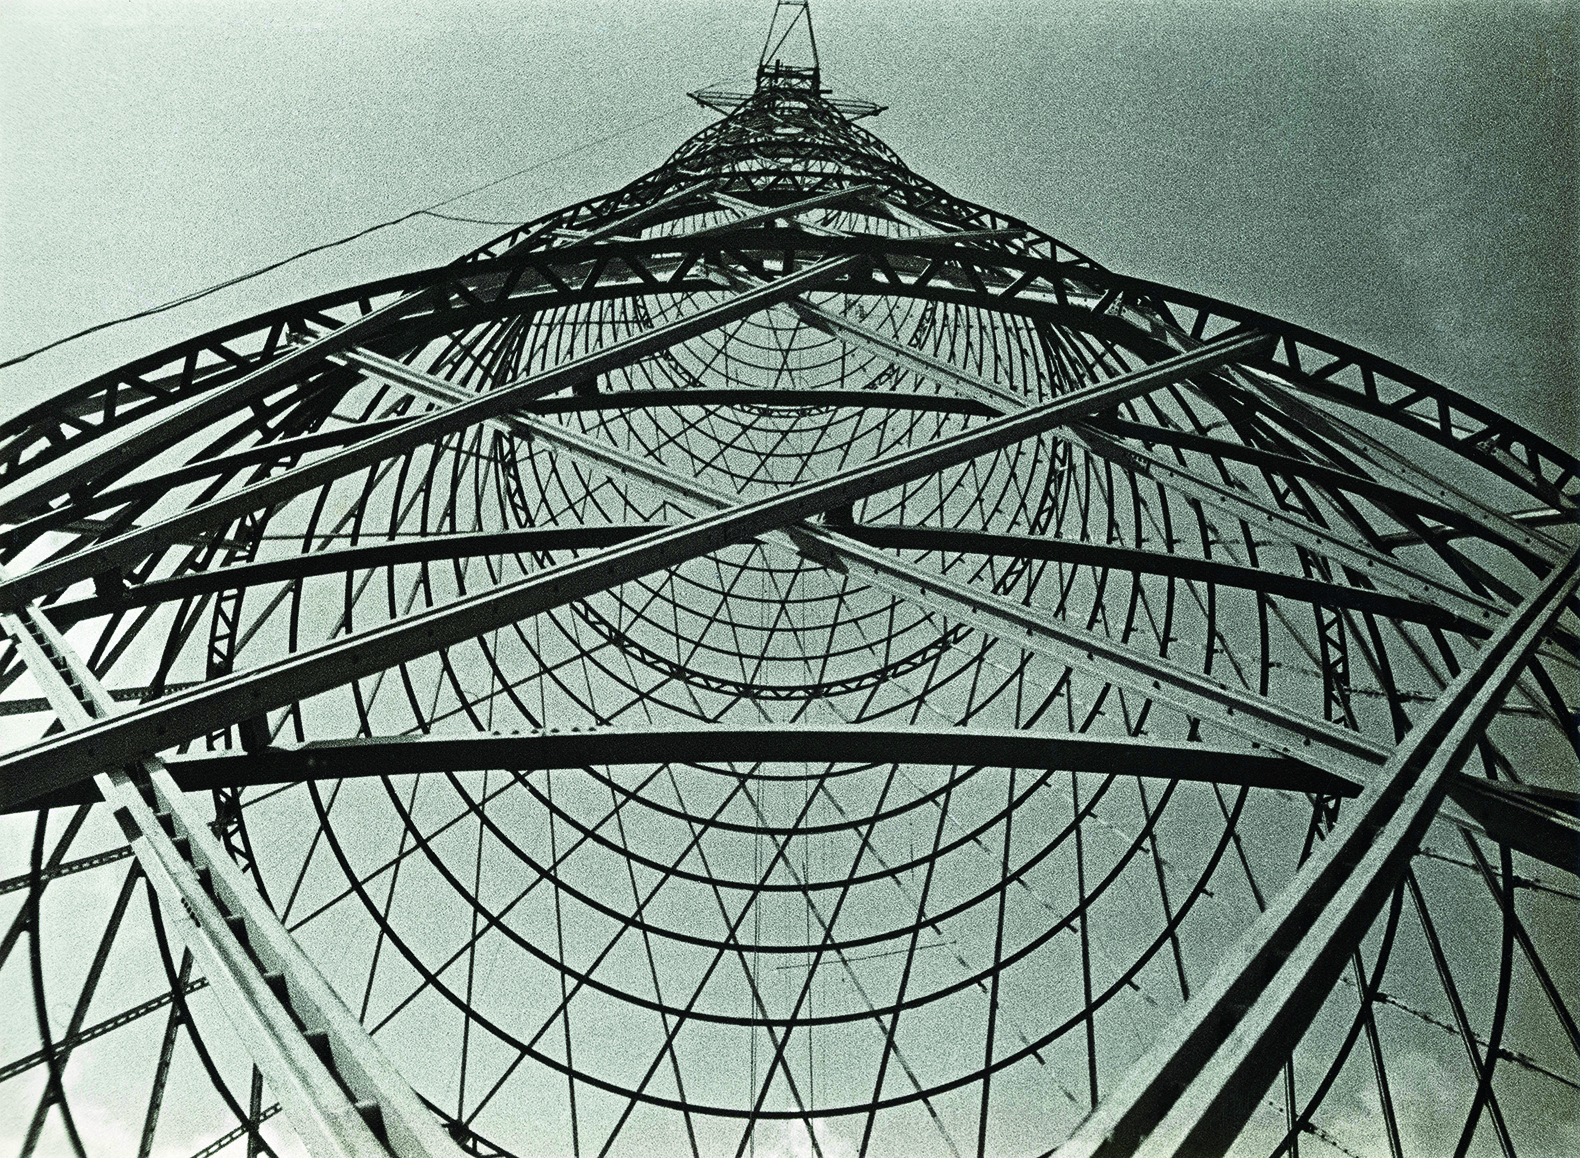 Fotografia em preto e branco. Vista de baixo de uma torre de transmissão, que destaca as linhas diagonais e paralelas e os arcos que formam a estrutura de aço da torre.